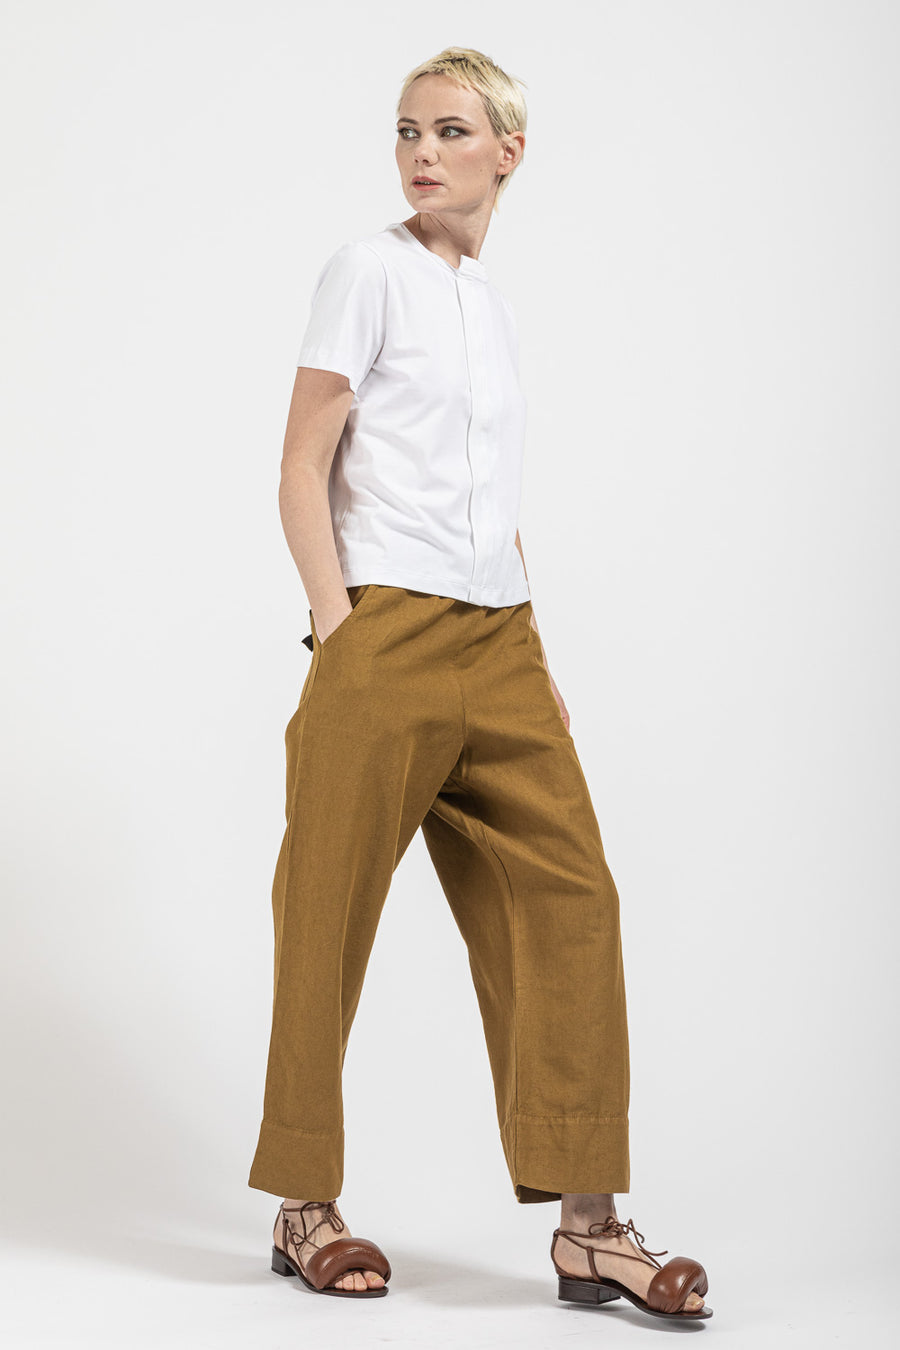 Pantalone Serie Numerica da donna in cotone e lino color oro